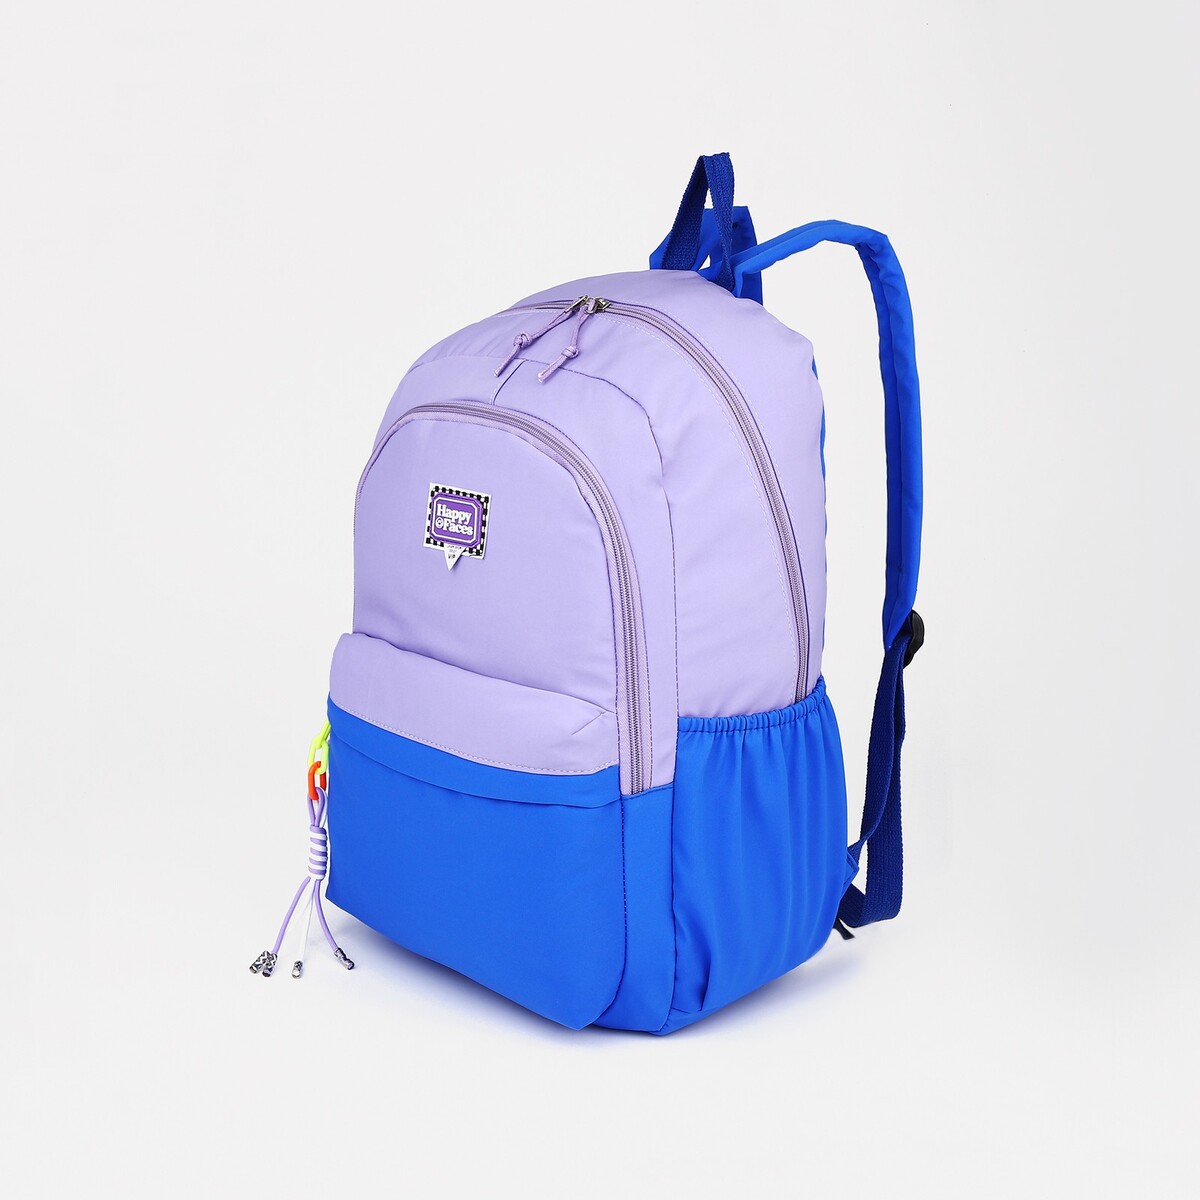 Рюкзак на молнии, 4 наружных кармана, цвет сиреневый/синий рюкзак школьный из текстиля на молнии 4 кармана сиреневый